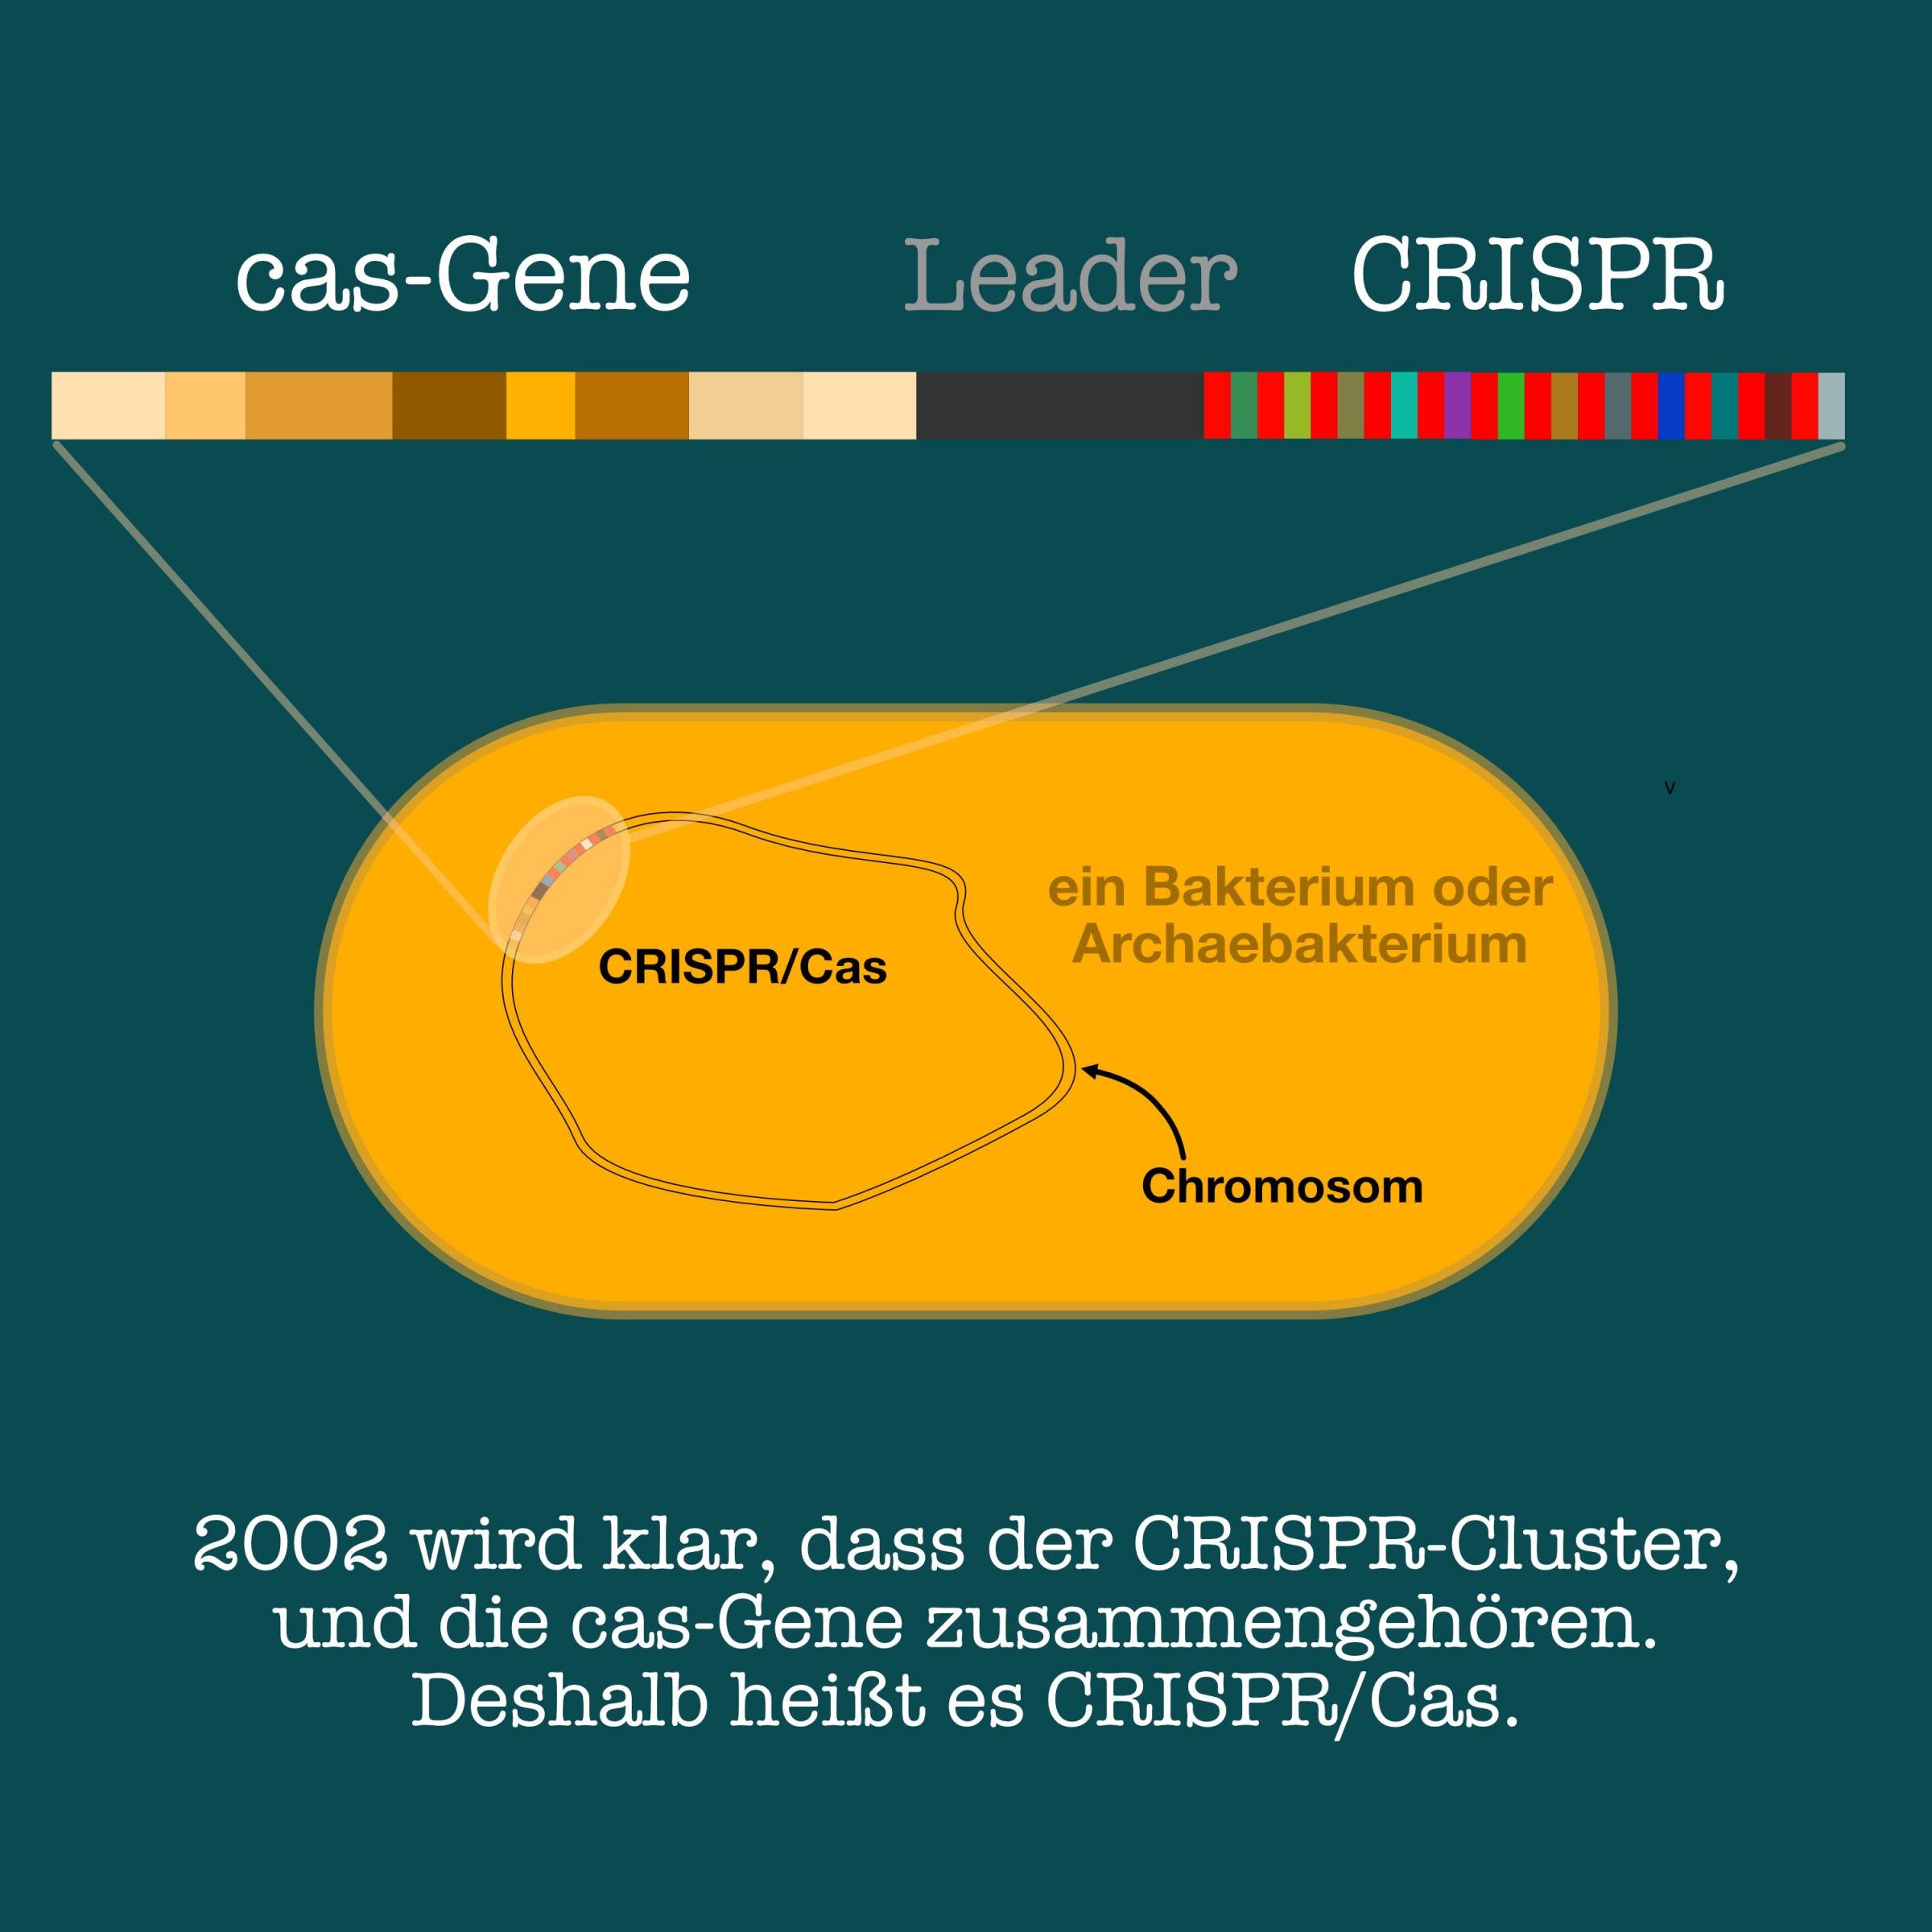 Grafische Darstellung einer Bakterien- oder Archaeen-Zelle, in dem CRISPR/Cas auf dem ringförmigen Chromosom verzeichnet ist und herausvergrößert ist, um das Ensemble aus das-Genen, leader-Srquenz und CRISPR-Sequenz zu zeigen.